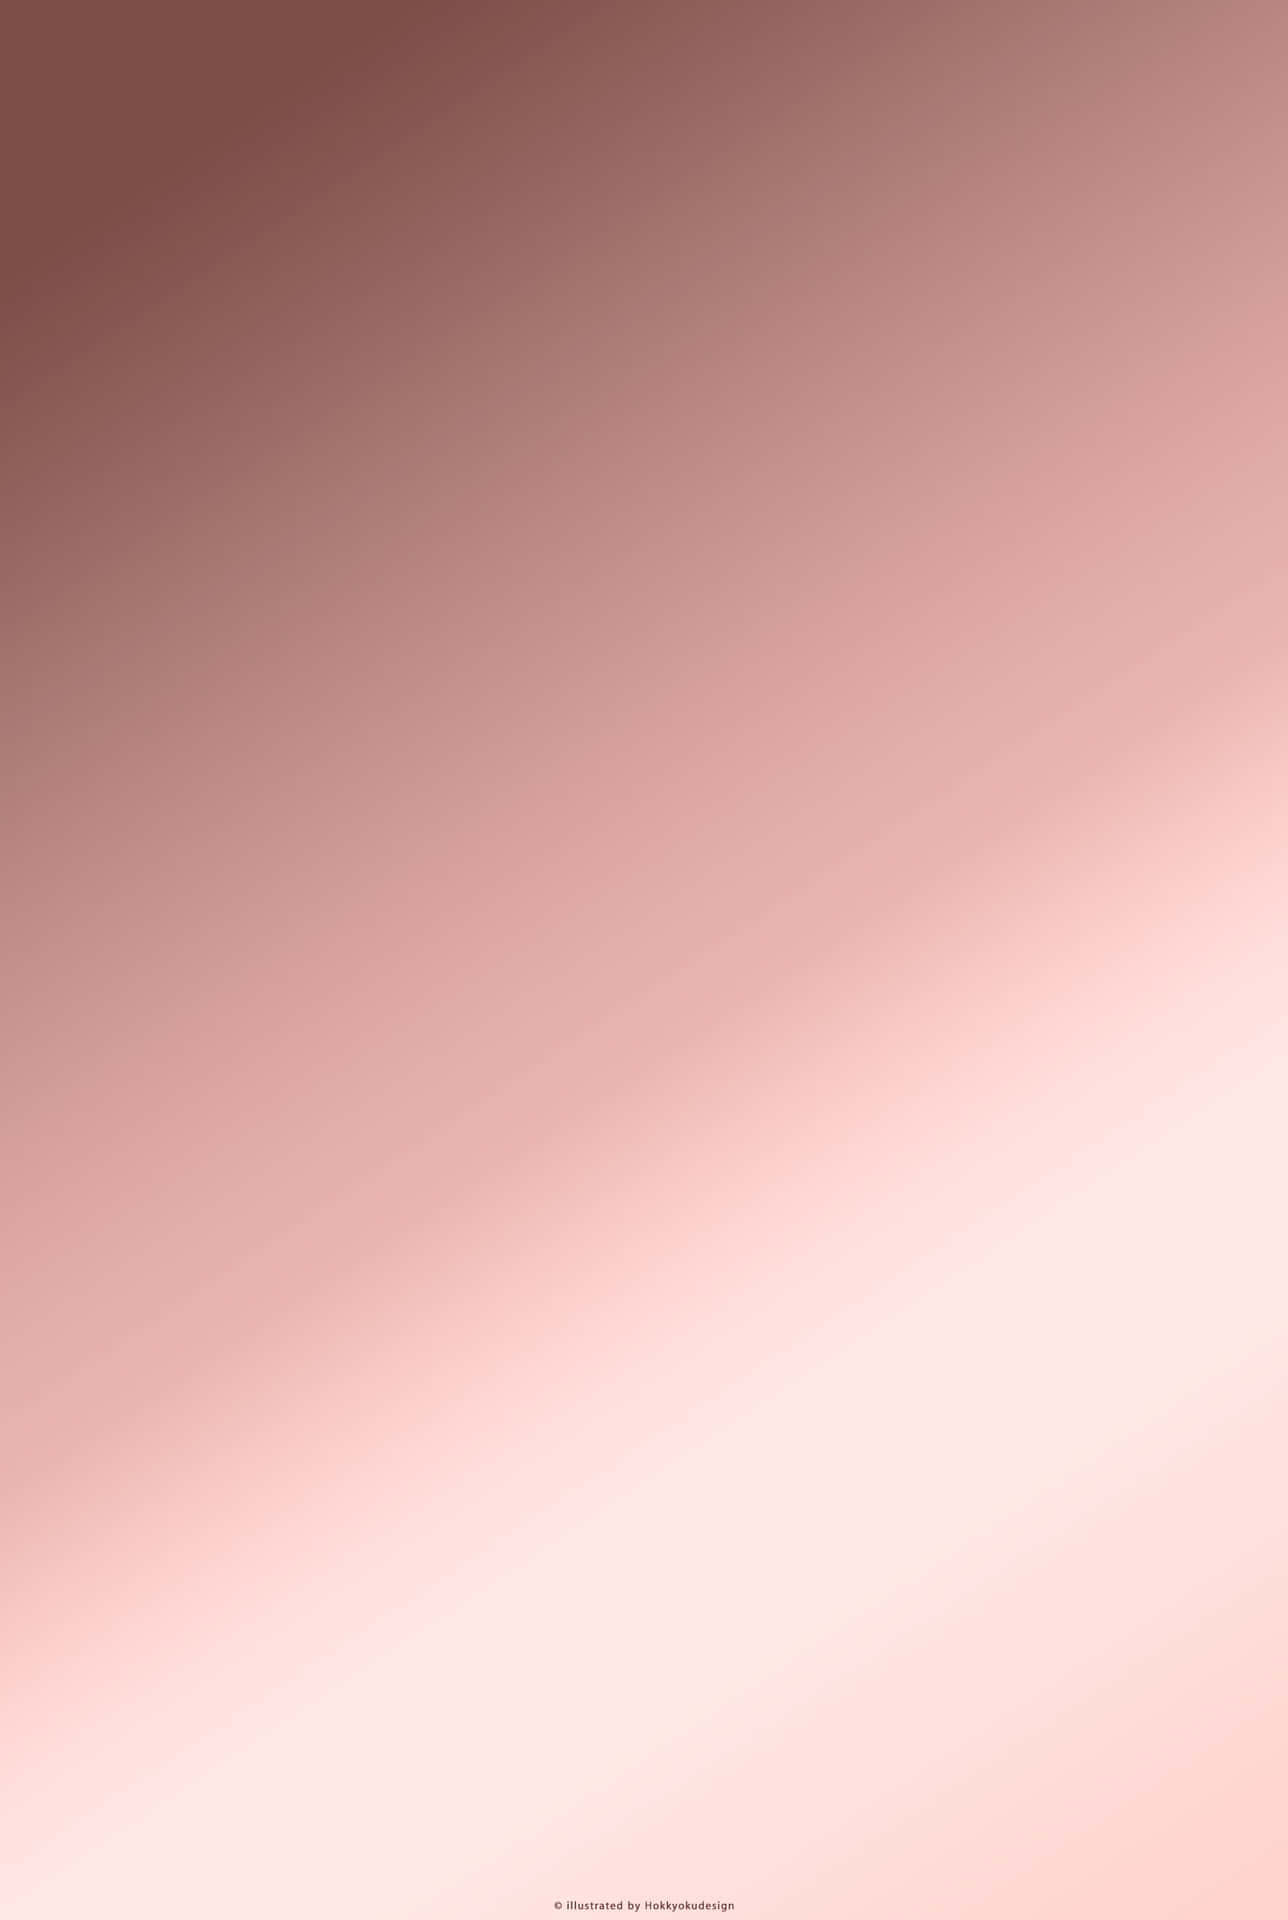 Iphone5 In Oro Rosa Con Un Elegante Design A Gradienti Sfondo